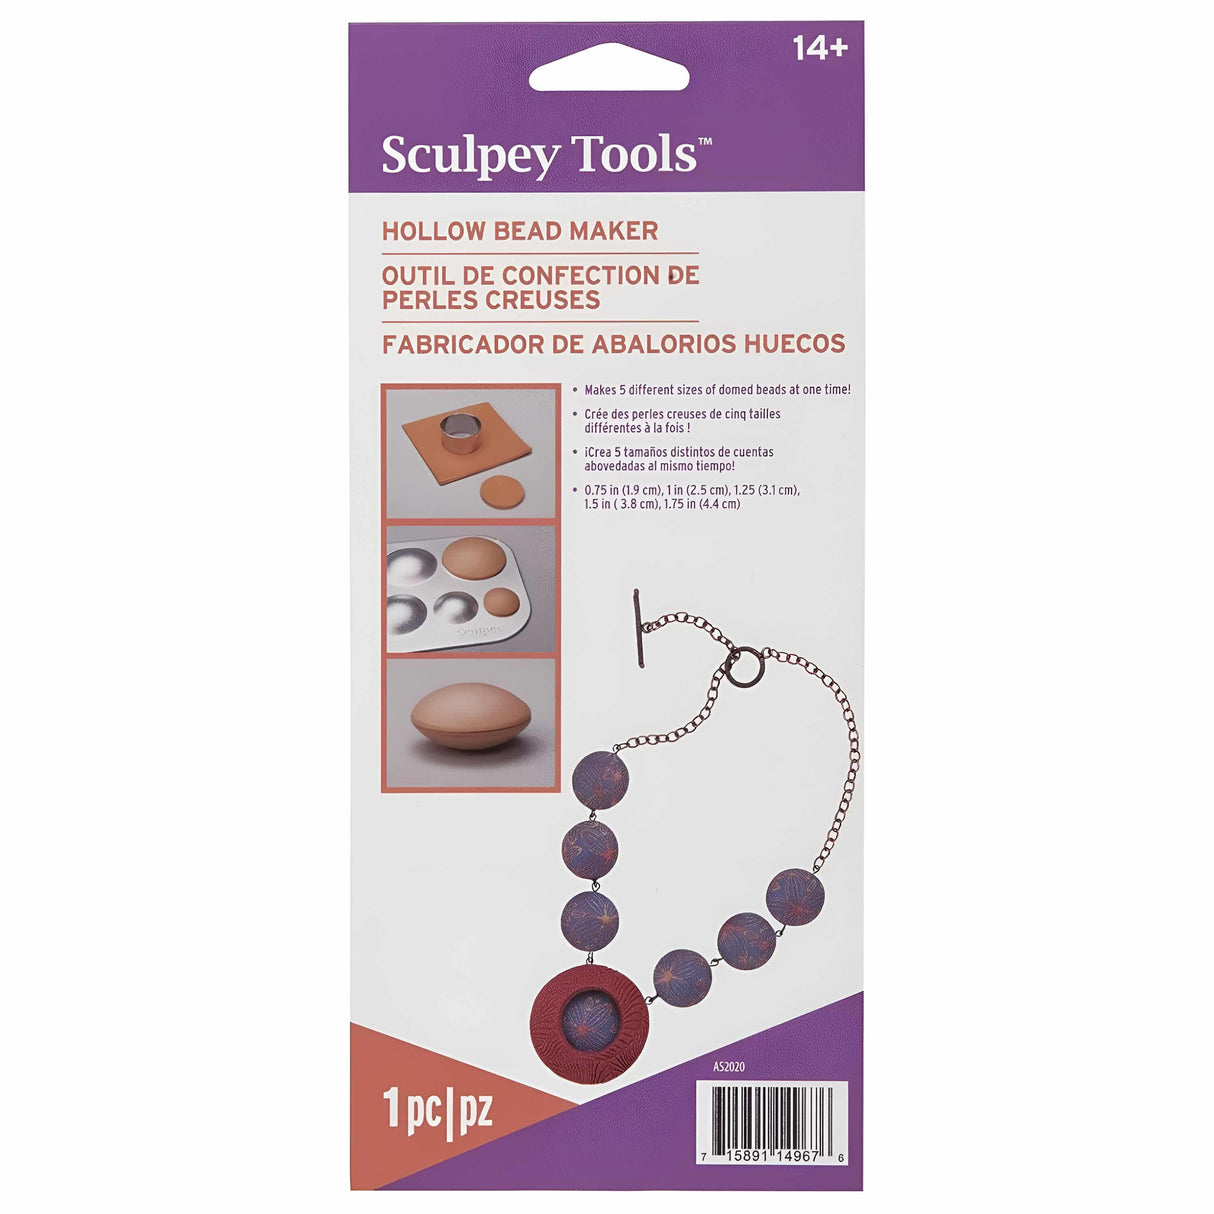 Sculpey - Moldes para Arcilla Fabricador de Abalorios Huecos